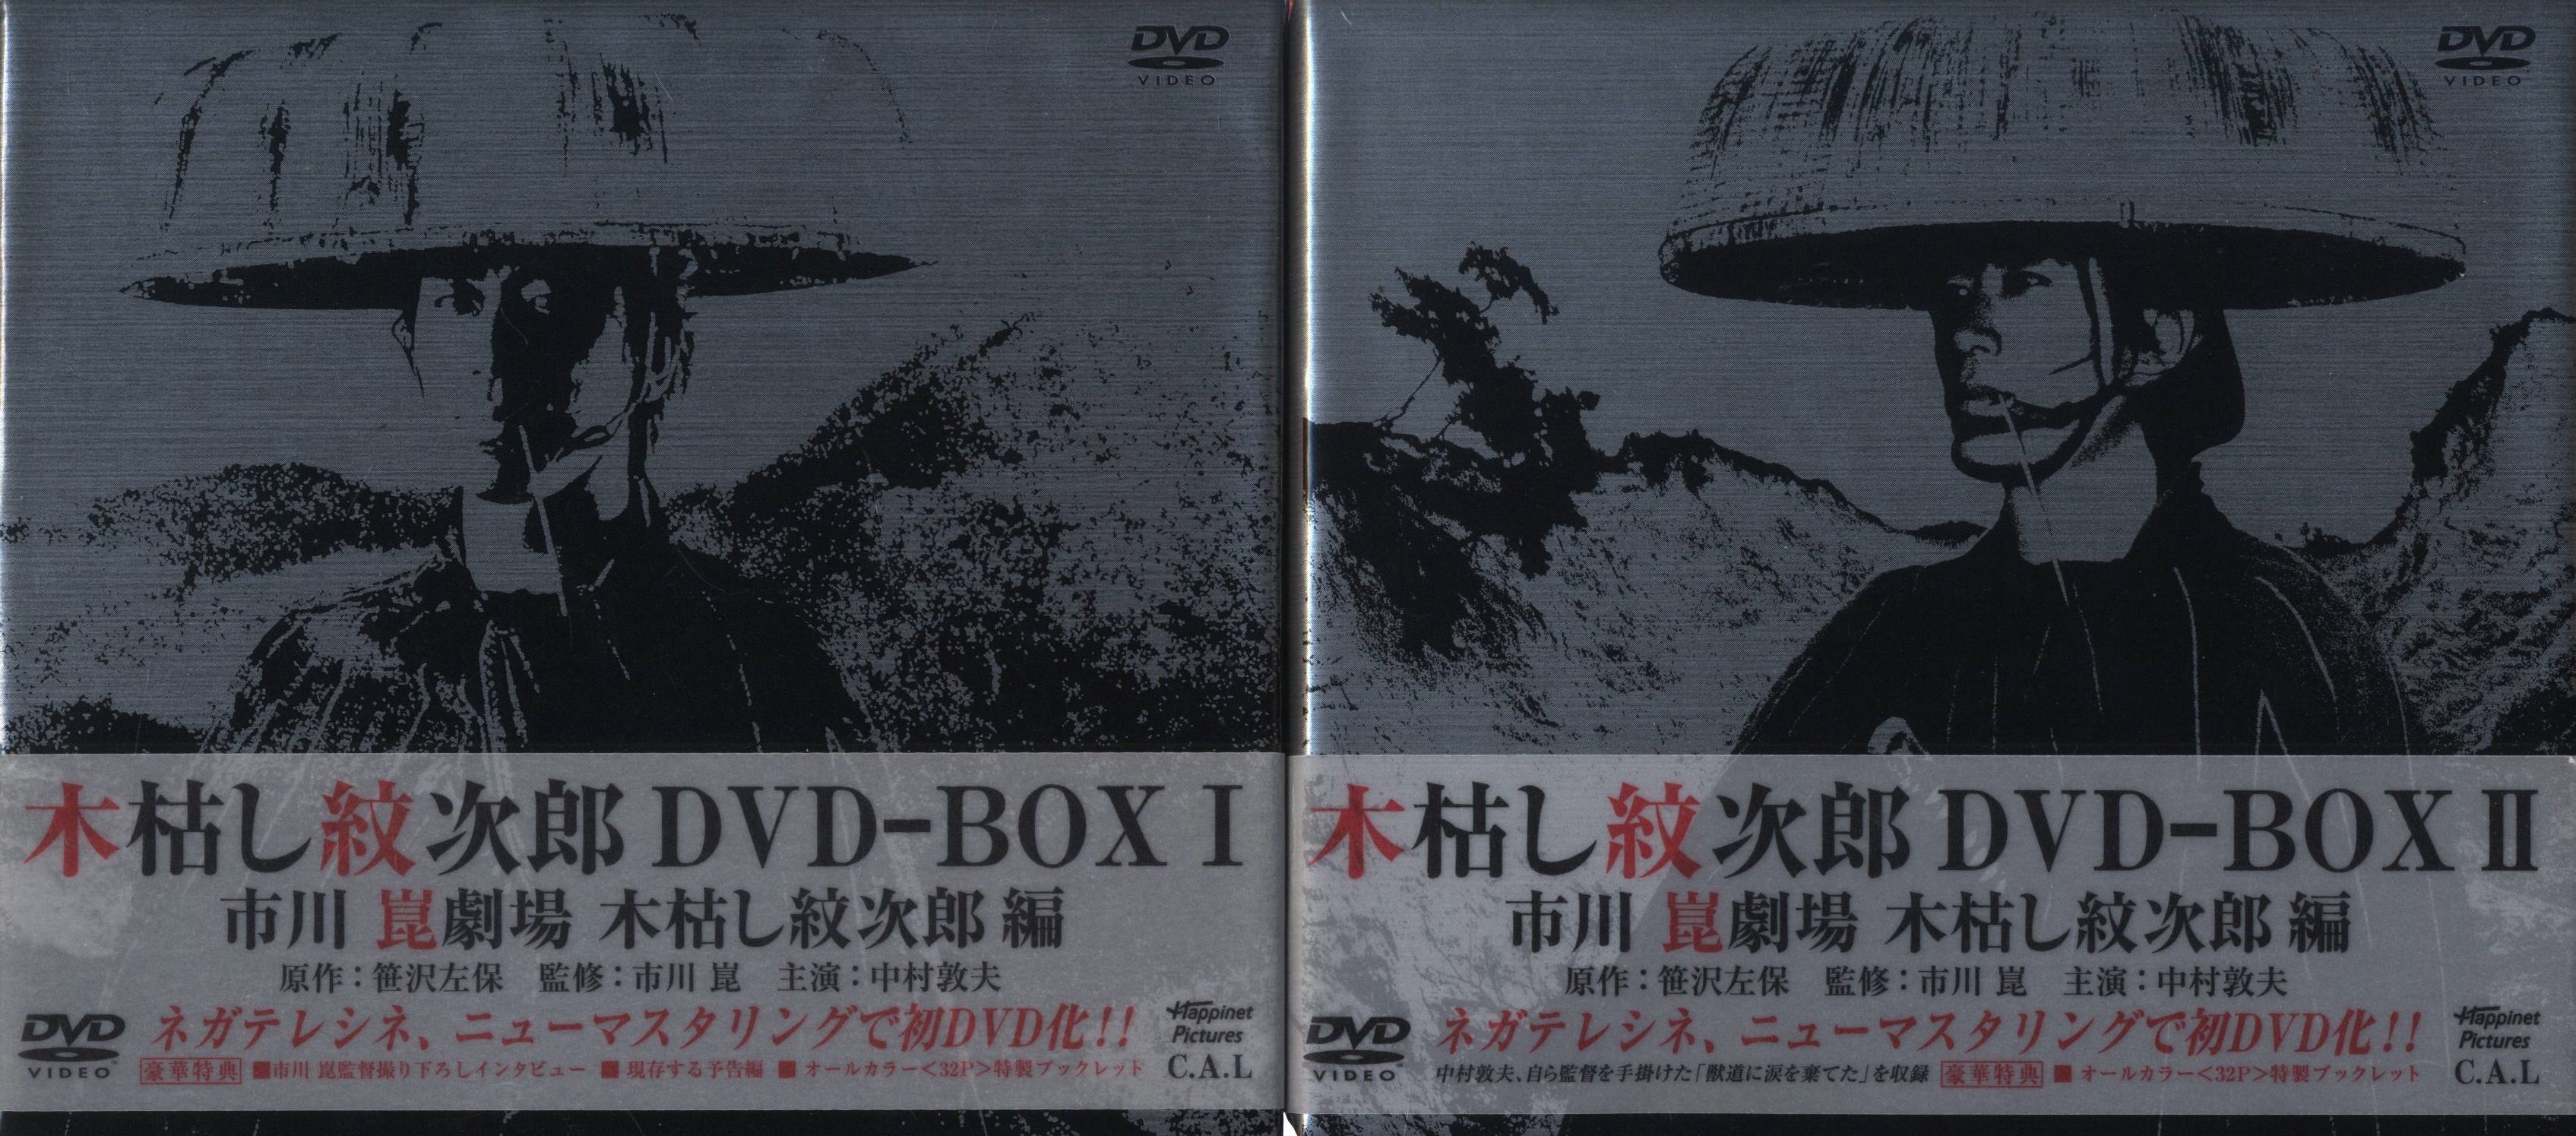 木枯し紋次郎 DVD-BOXⅠとDVD-BOXⅡのセットご希望に添えず申し訳ありません